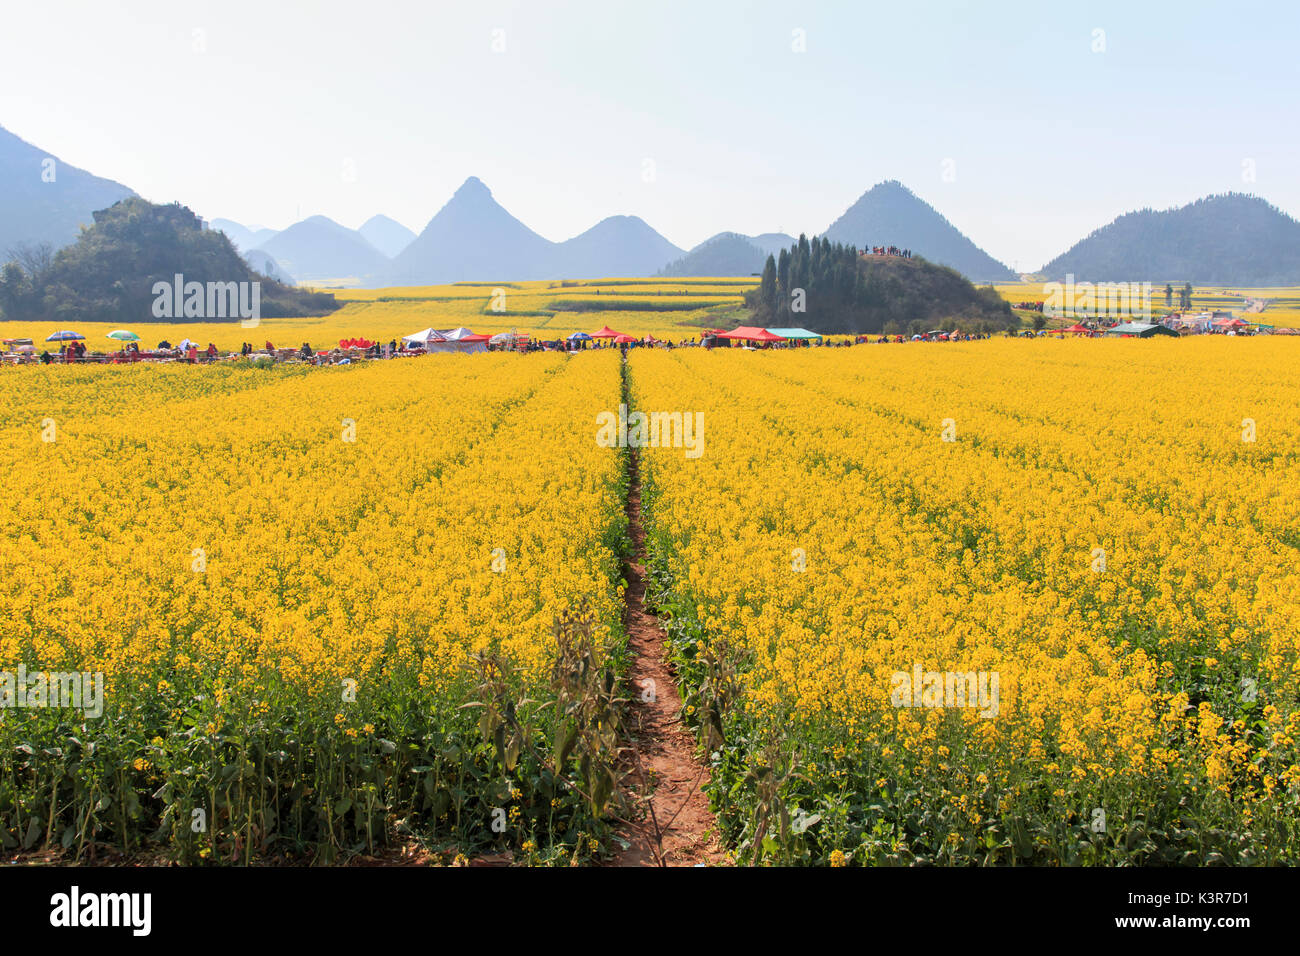 Les touristes marcher parmi les champs de fleurs de colza Luoping dans le Yunnan en Chine. Luoping est célèbre pour les fleurs de colza que fleur le début du printemps, Chine Banque D'Images